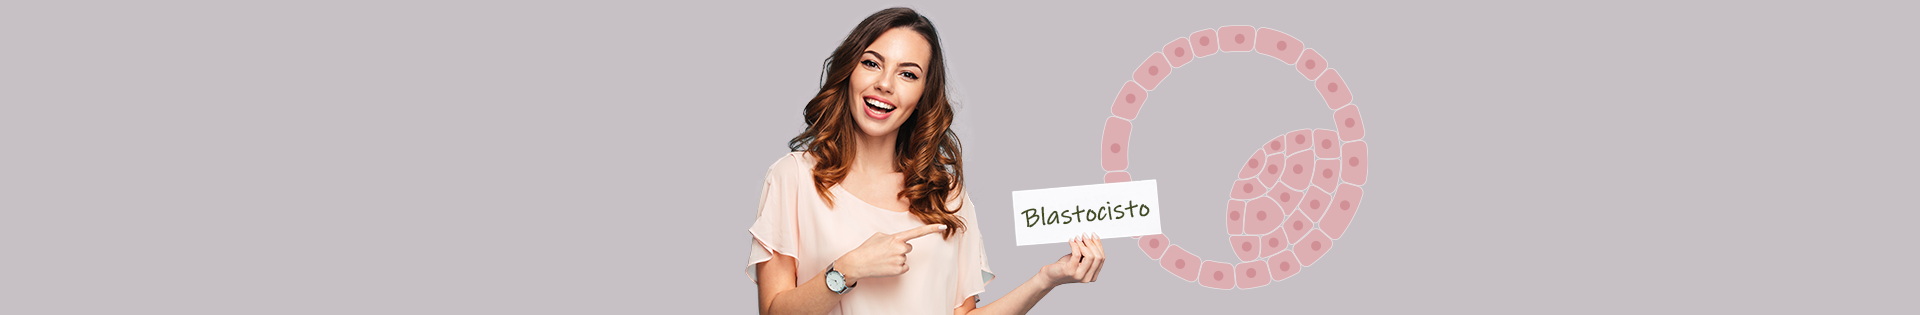 Blastocisto: o que é e qual sua importância para a FIV?